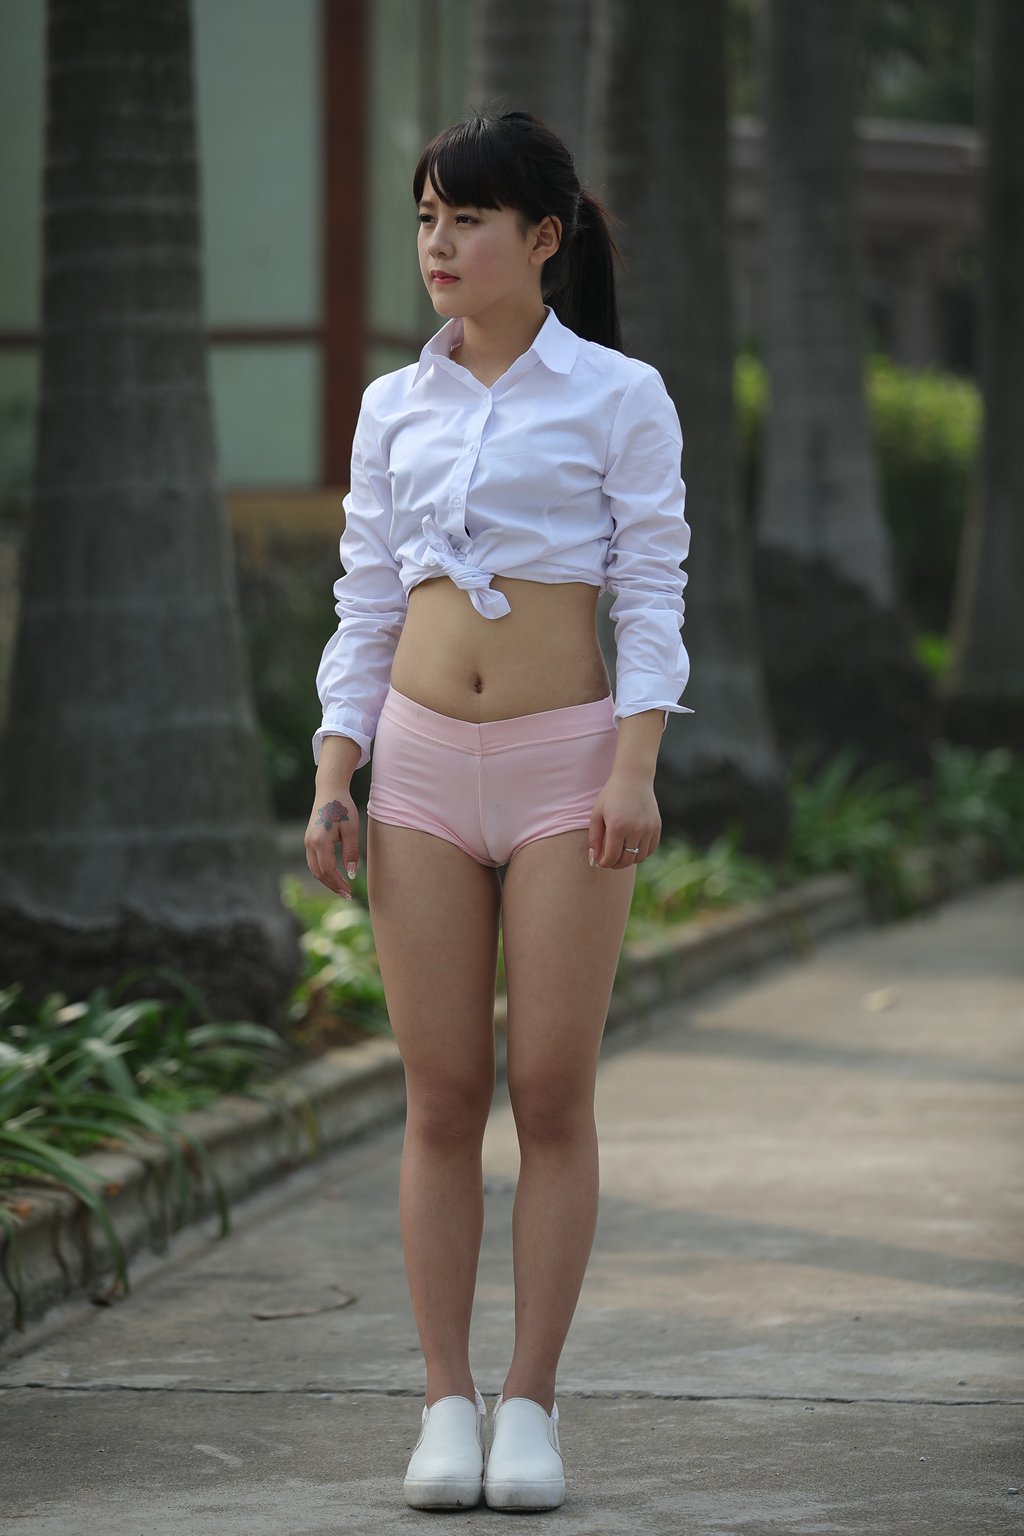 精选街拍作品 NO.502 运动女孩 粉色热裤